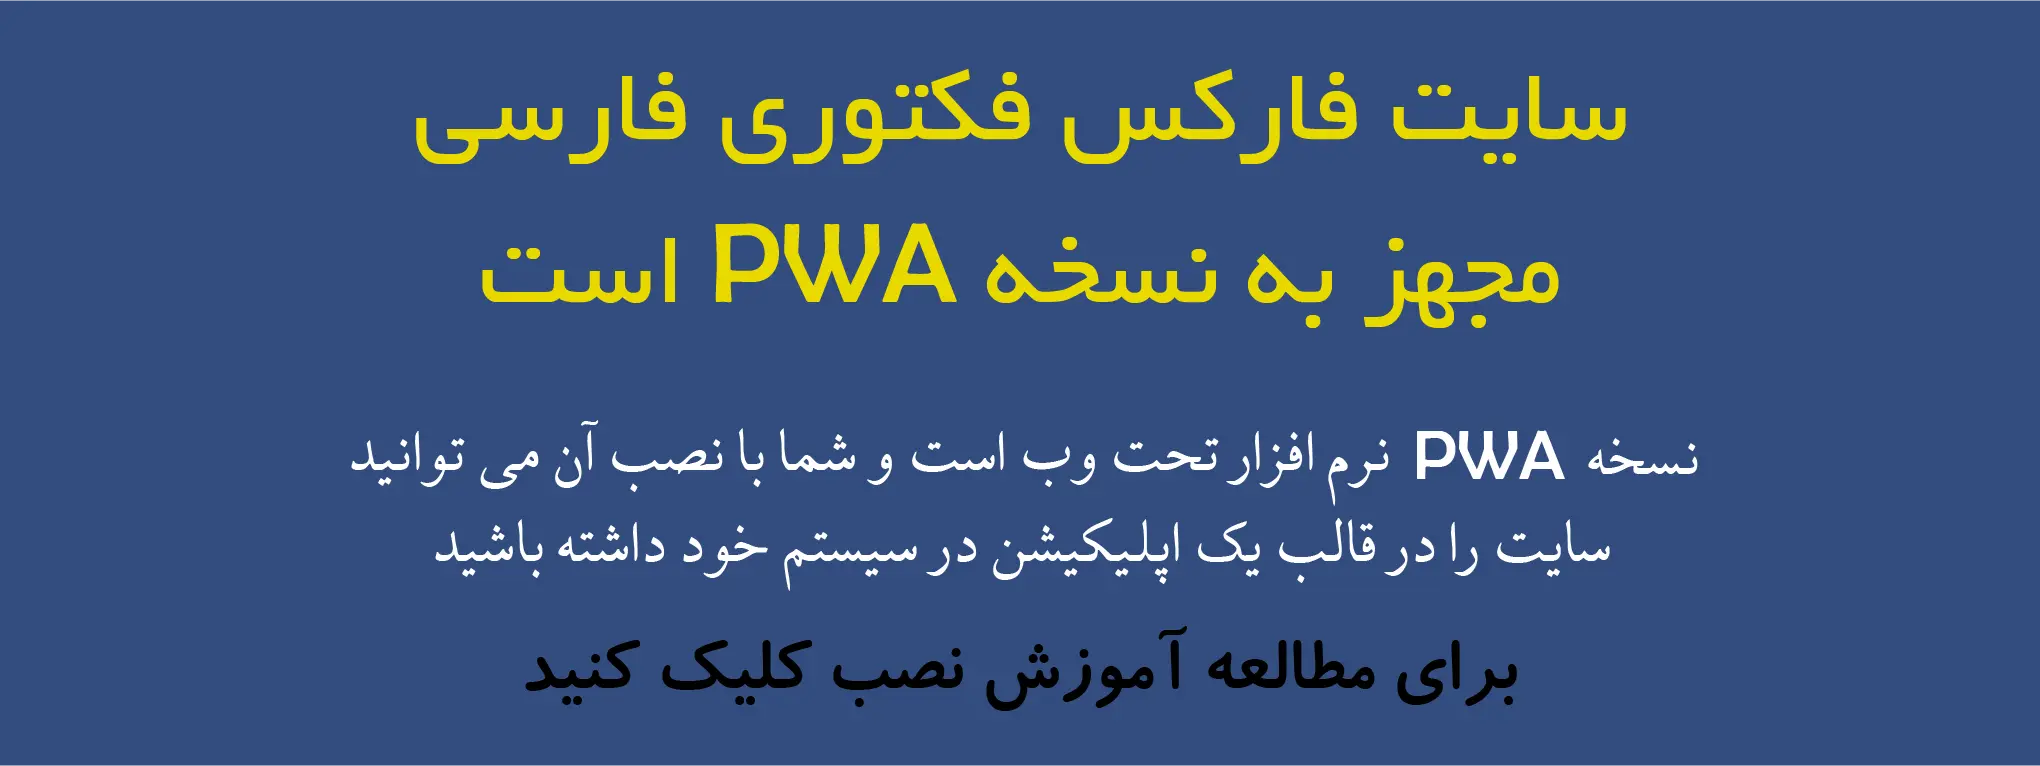 سایت فارکس فکتوری فارسی مجهز به نسخه PWA است